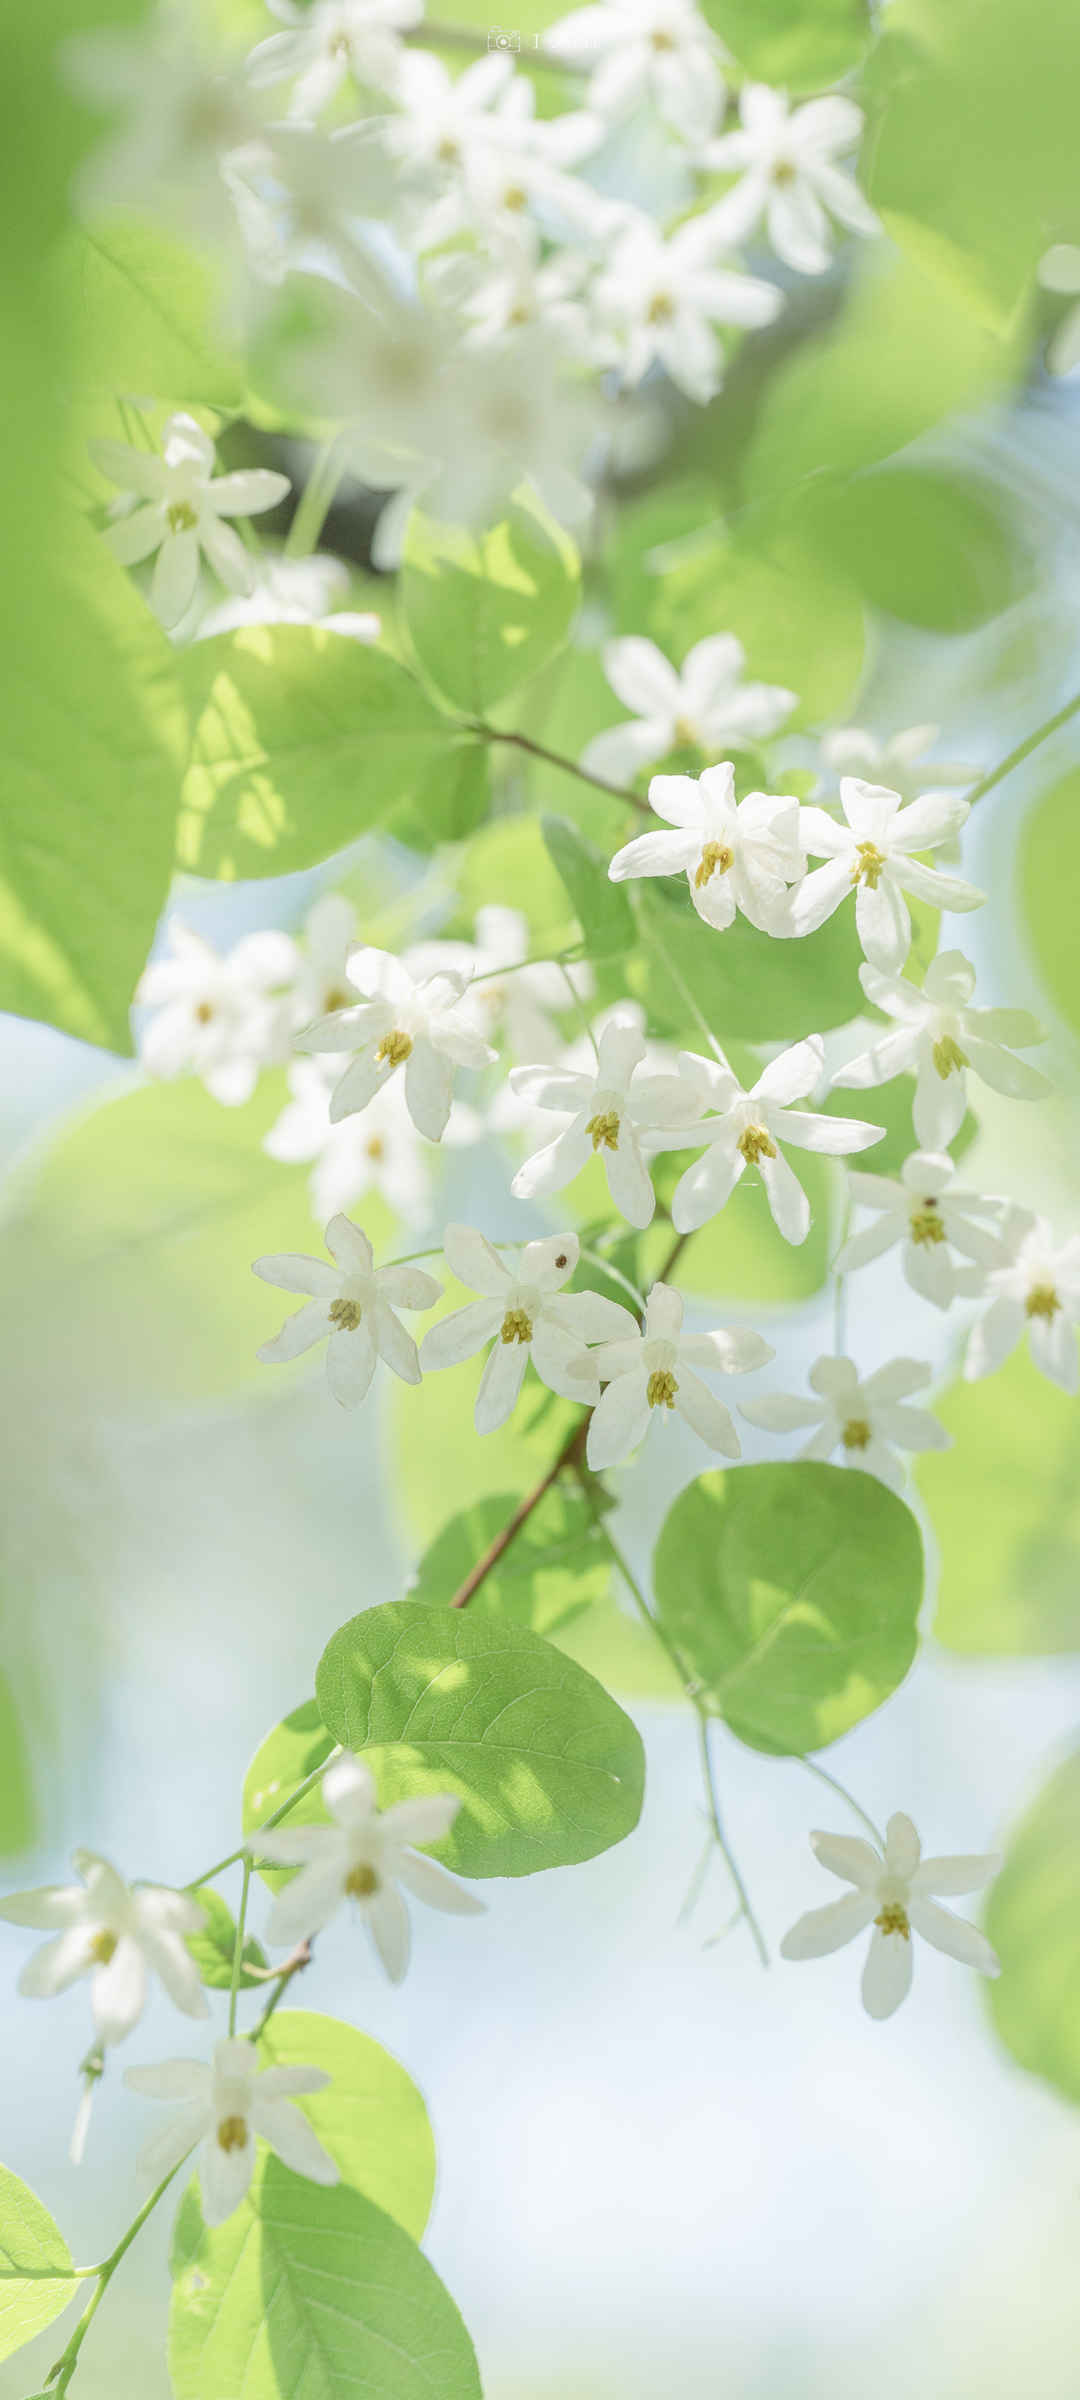 清新淡雅的图片花朵白色绿叶-